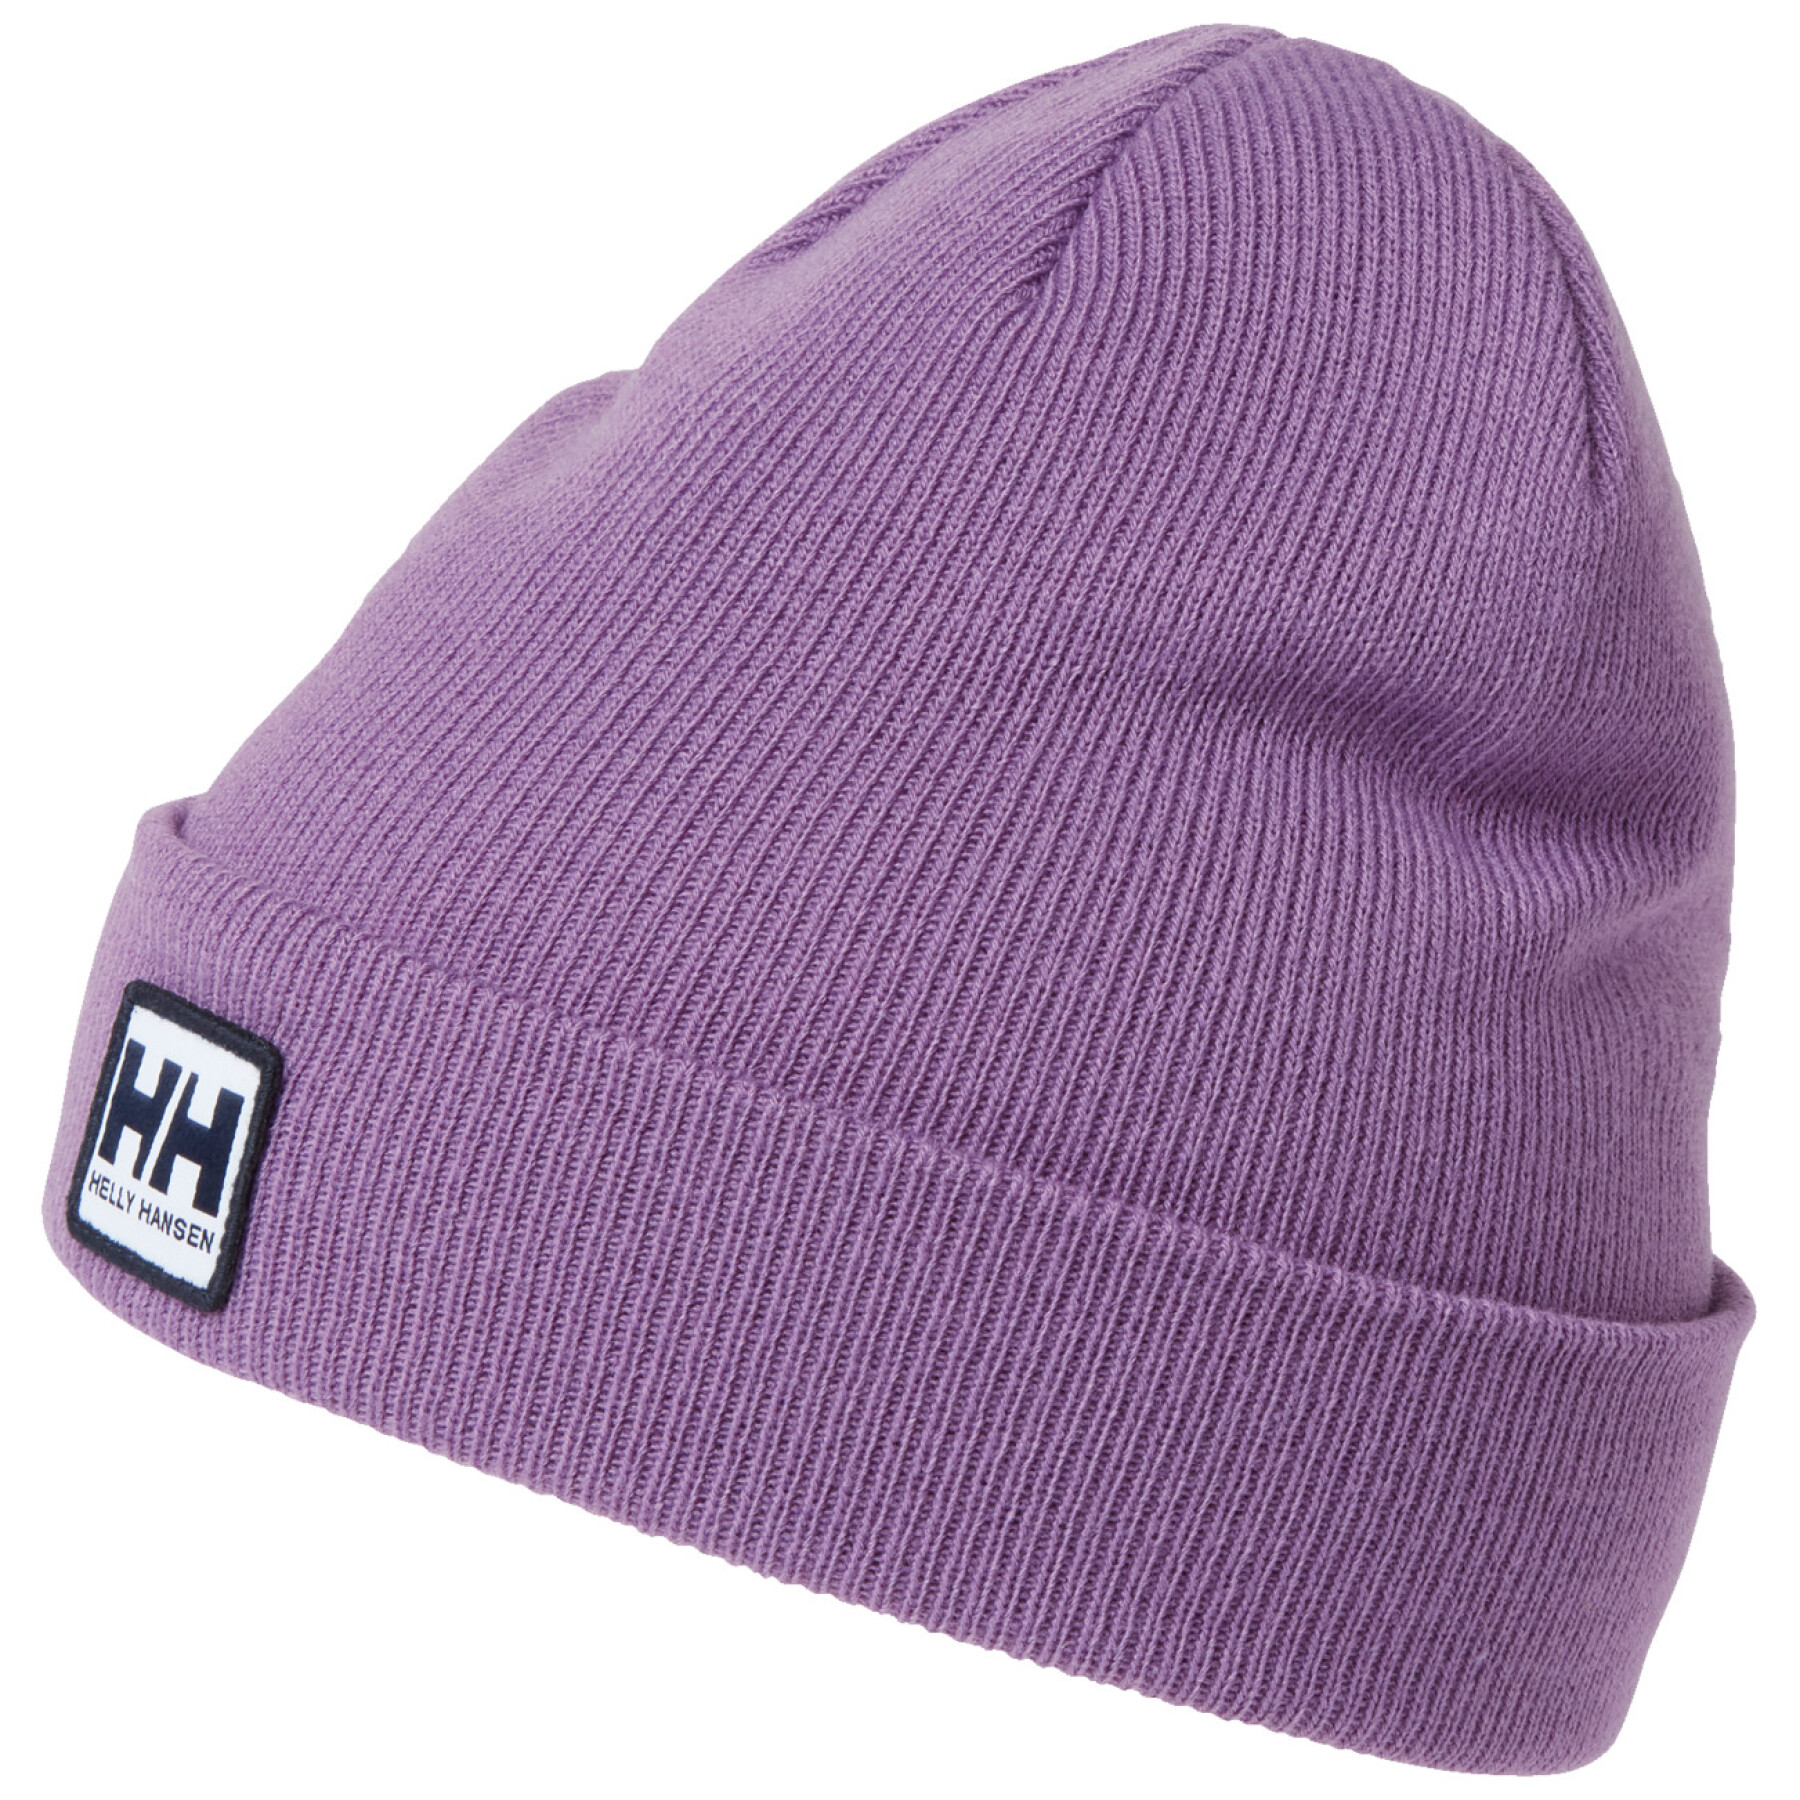 Children's hat Helly Hansen urban cuff